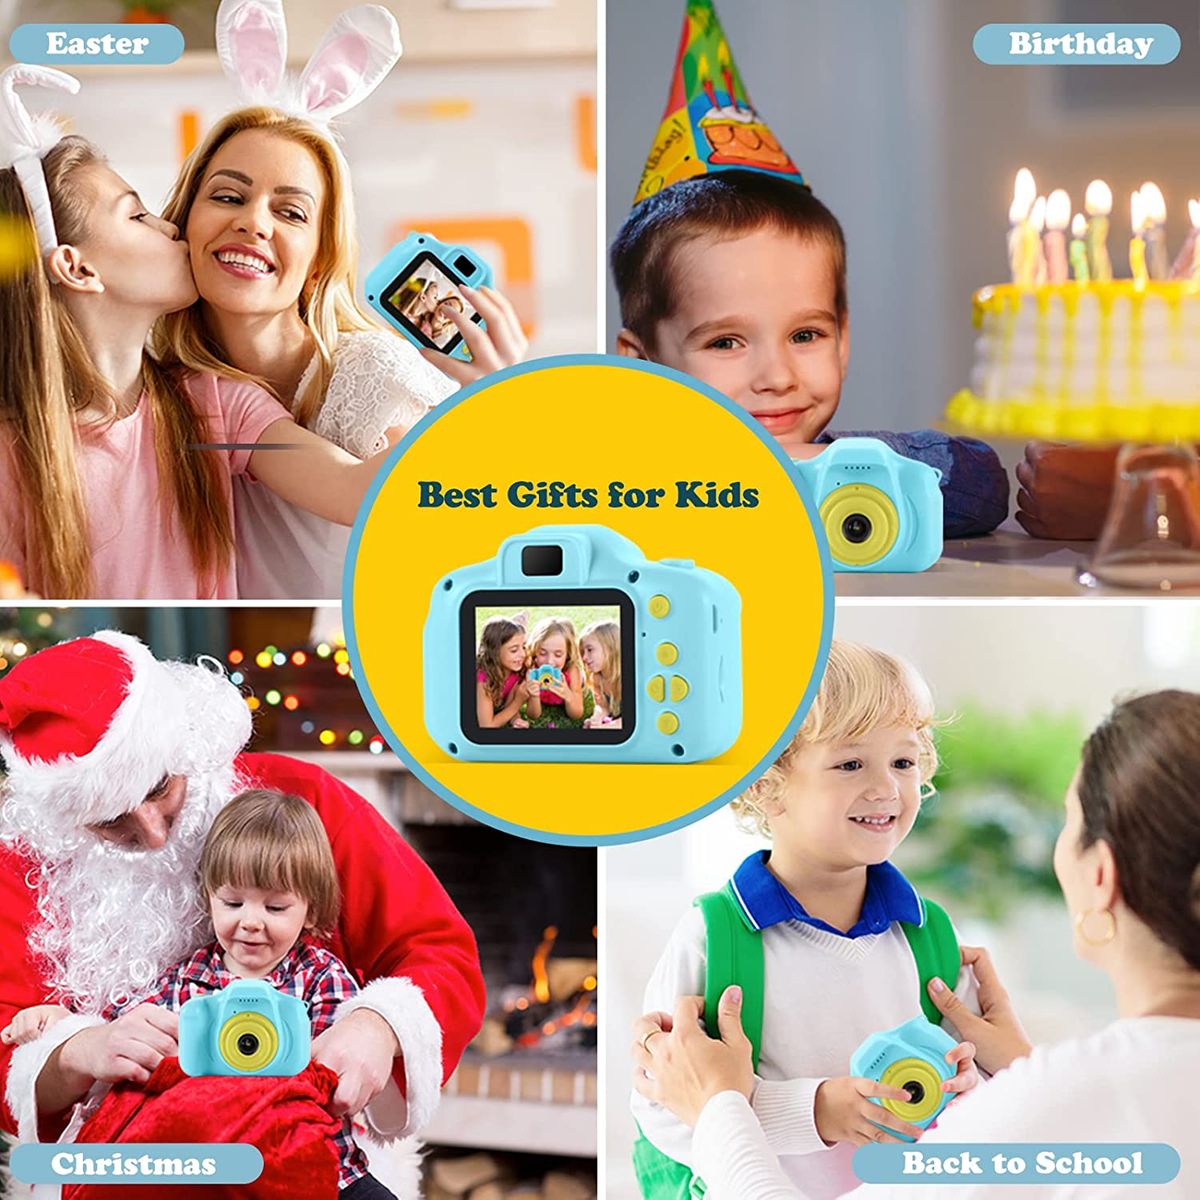 OMWay Kamera Kinder ab 3 4 5,Fotokamera Kinder,OMWay Kinderspielzeug Geschenke für 6-8 Jahre,HD 1080P Fotoapparat Digitalkamera,Weihnachten Geburtstag Spielzeug Kinderkamera ab 3-8 Jährige Junge(Blau) 3-Blau